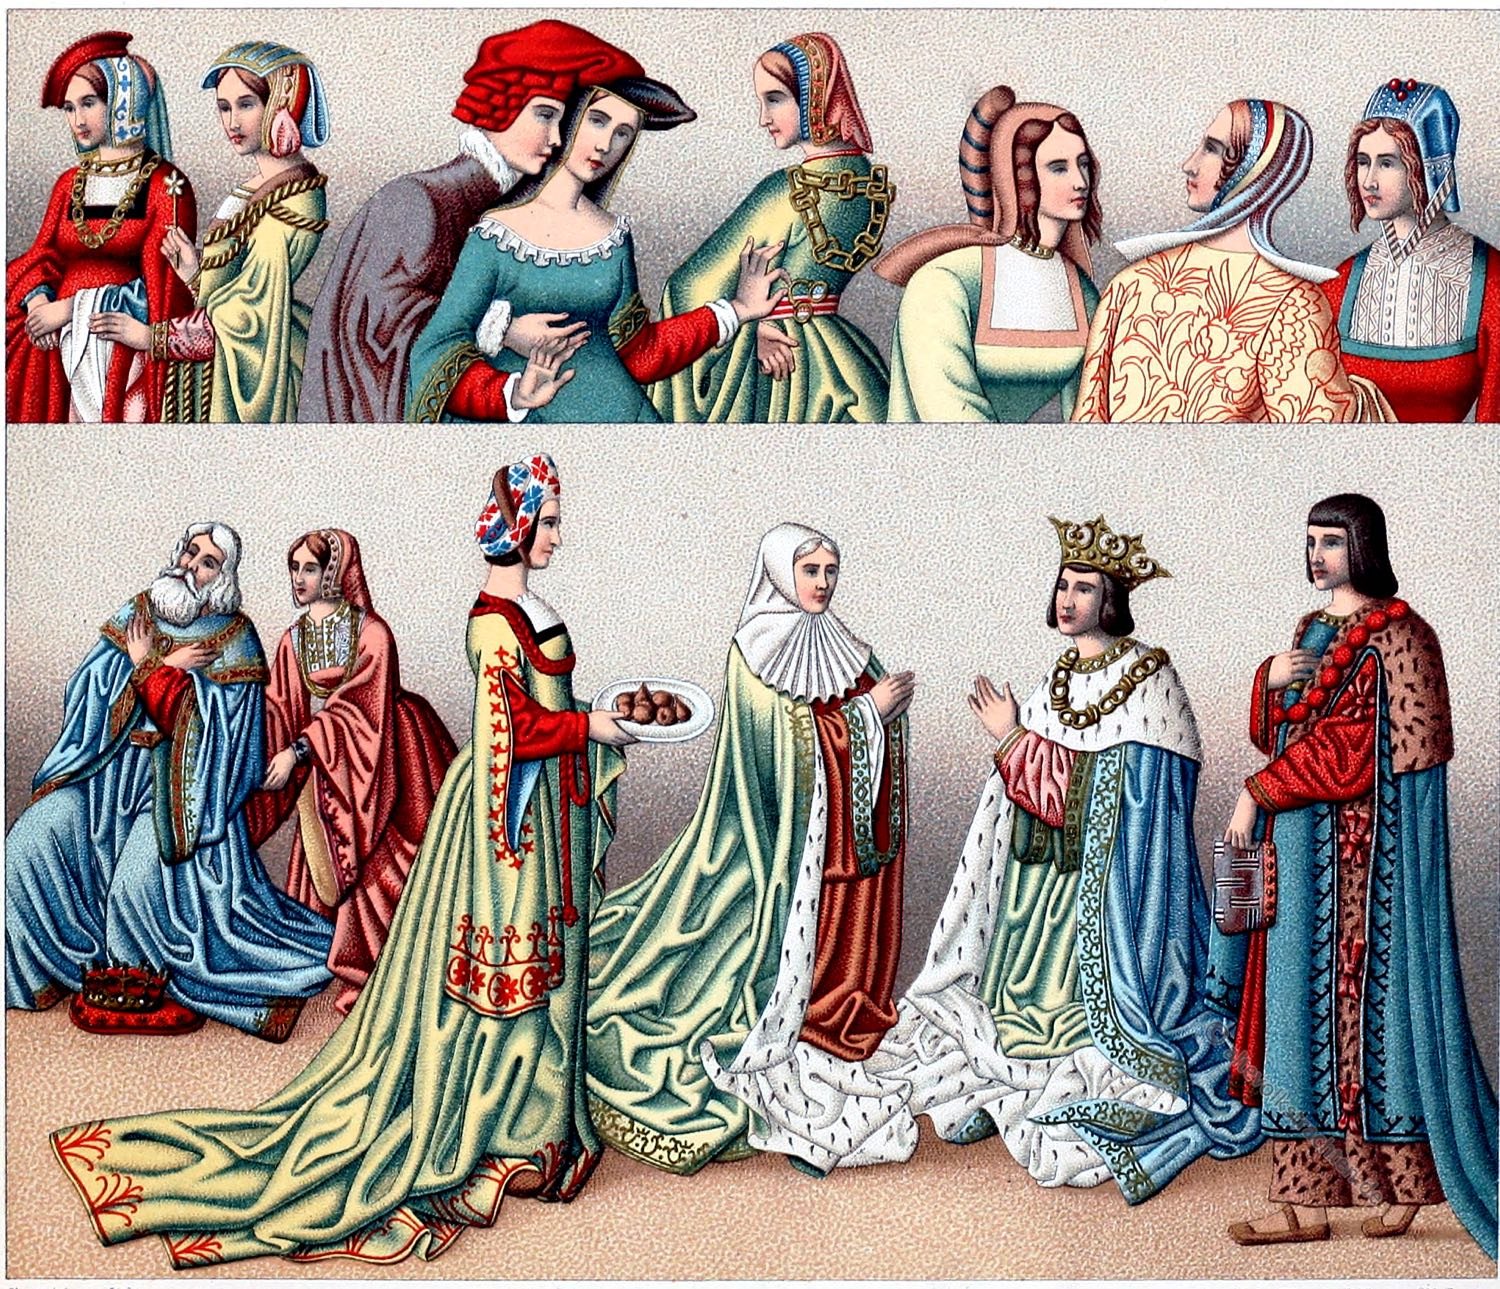 14 век эпоха. Бургундская мода 15 век. Мода в Возрождение (XV-XVI века). Ренессанс 15 века одежда. Мода 14 века средневековые Европа.